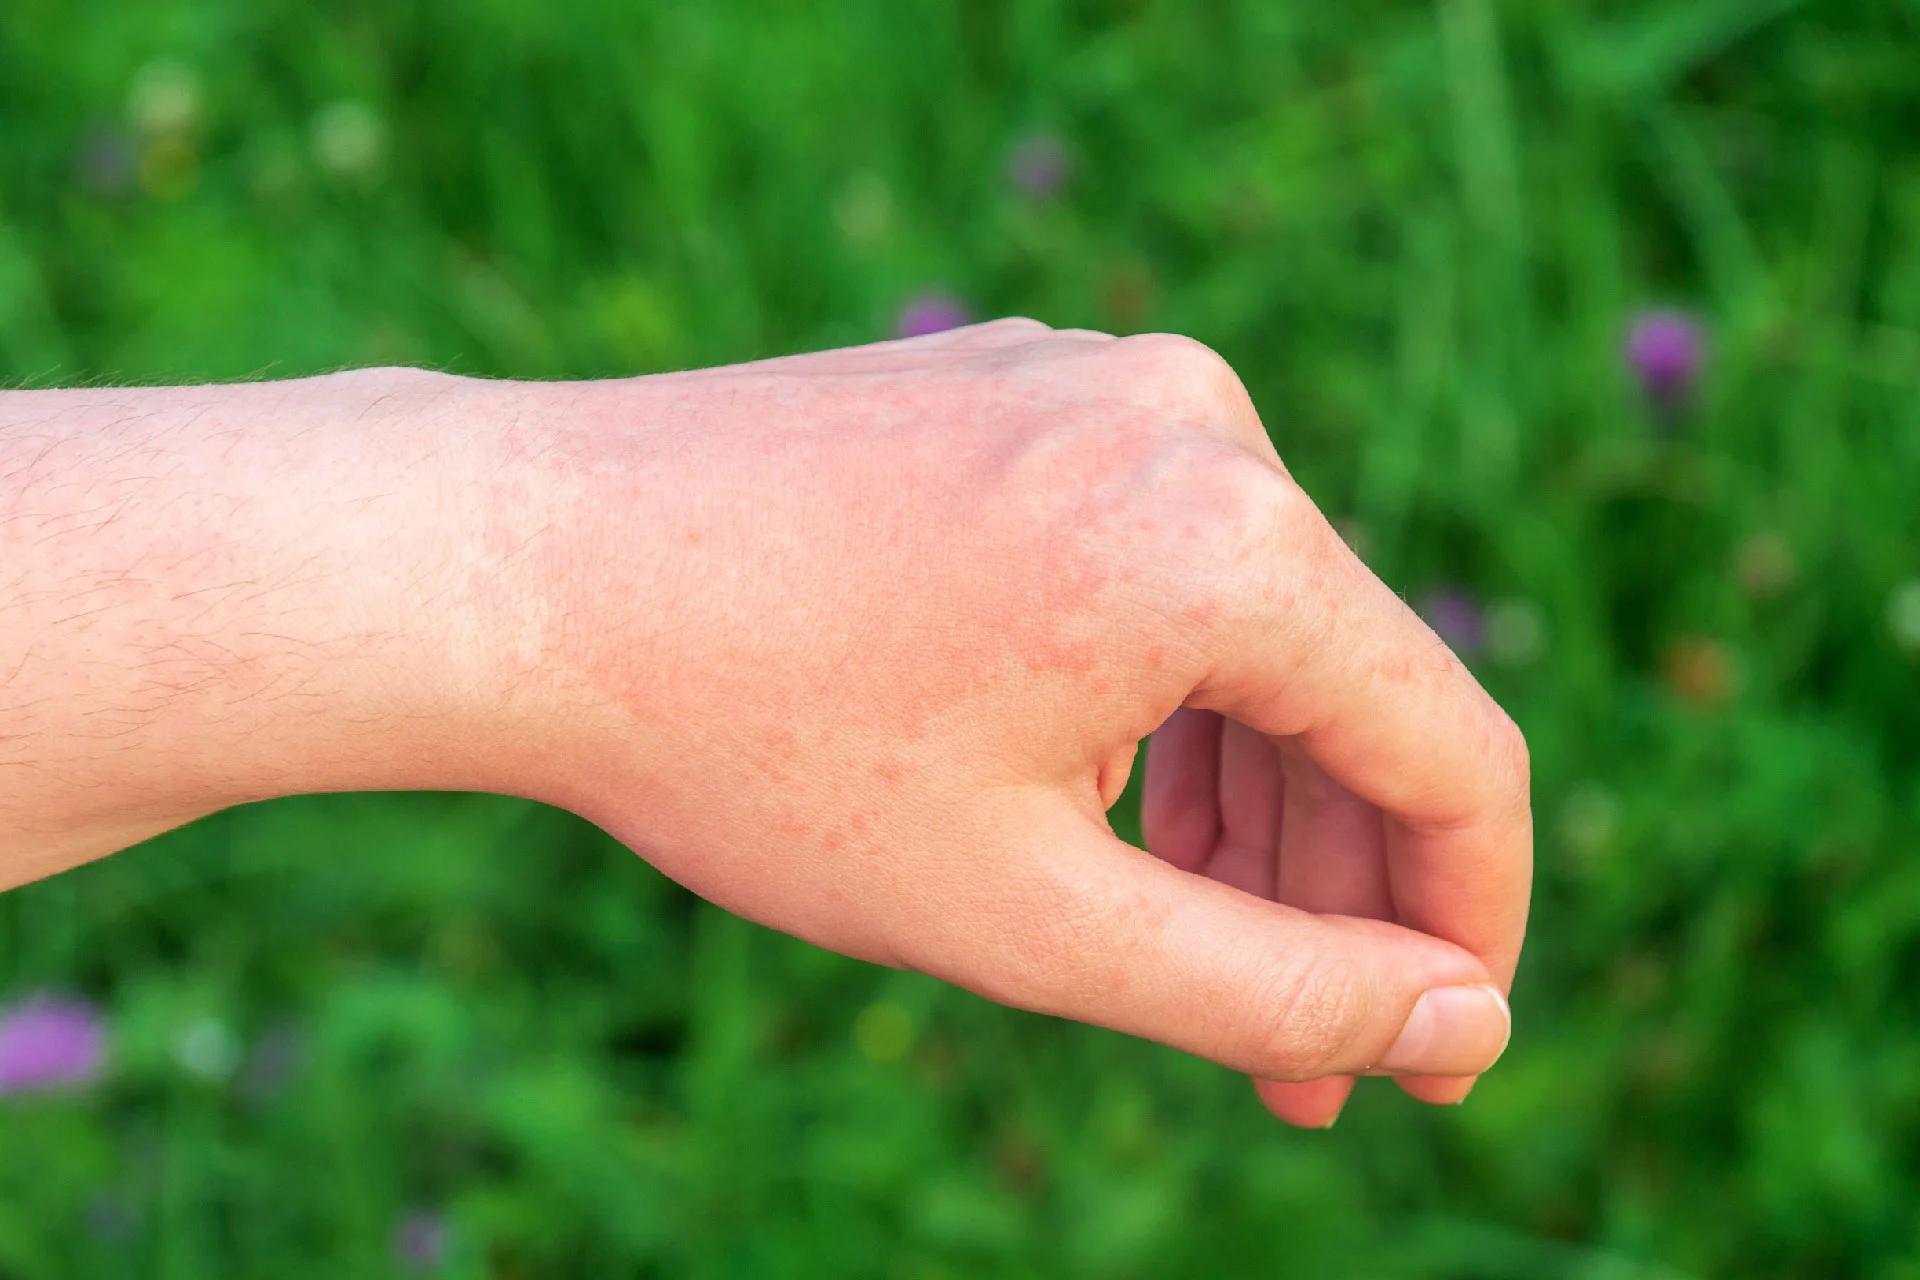 फंगल त्वचा संक्रमण: कारण, प्रारंभिक लक्षण, प्रकार और उपचार